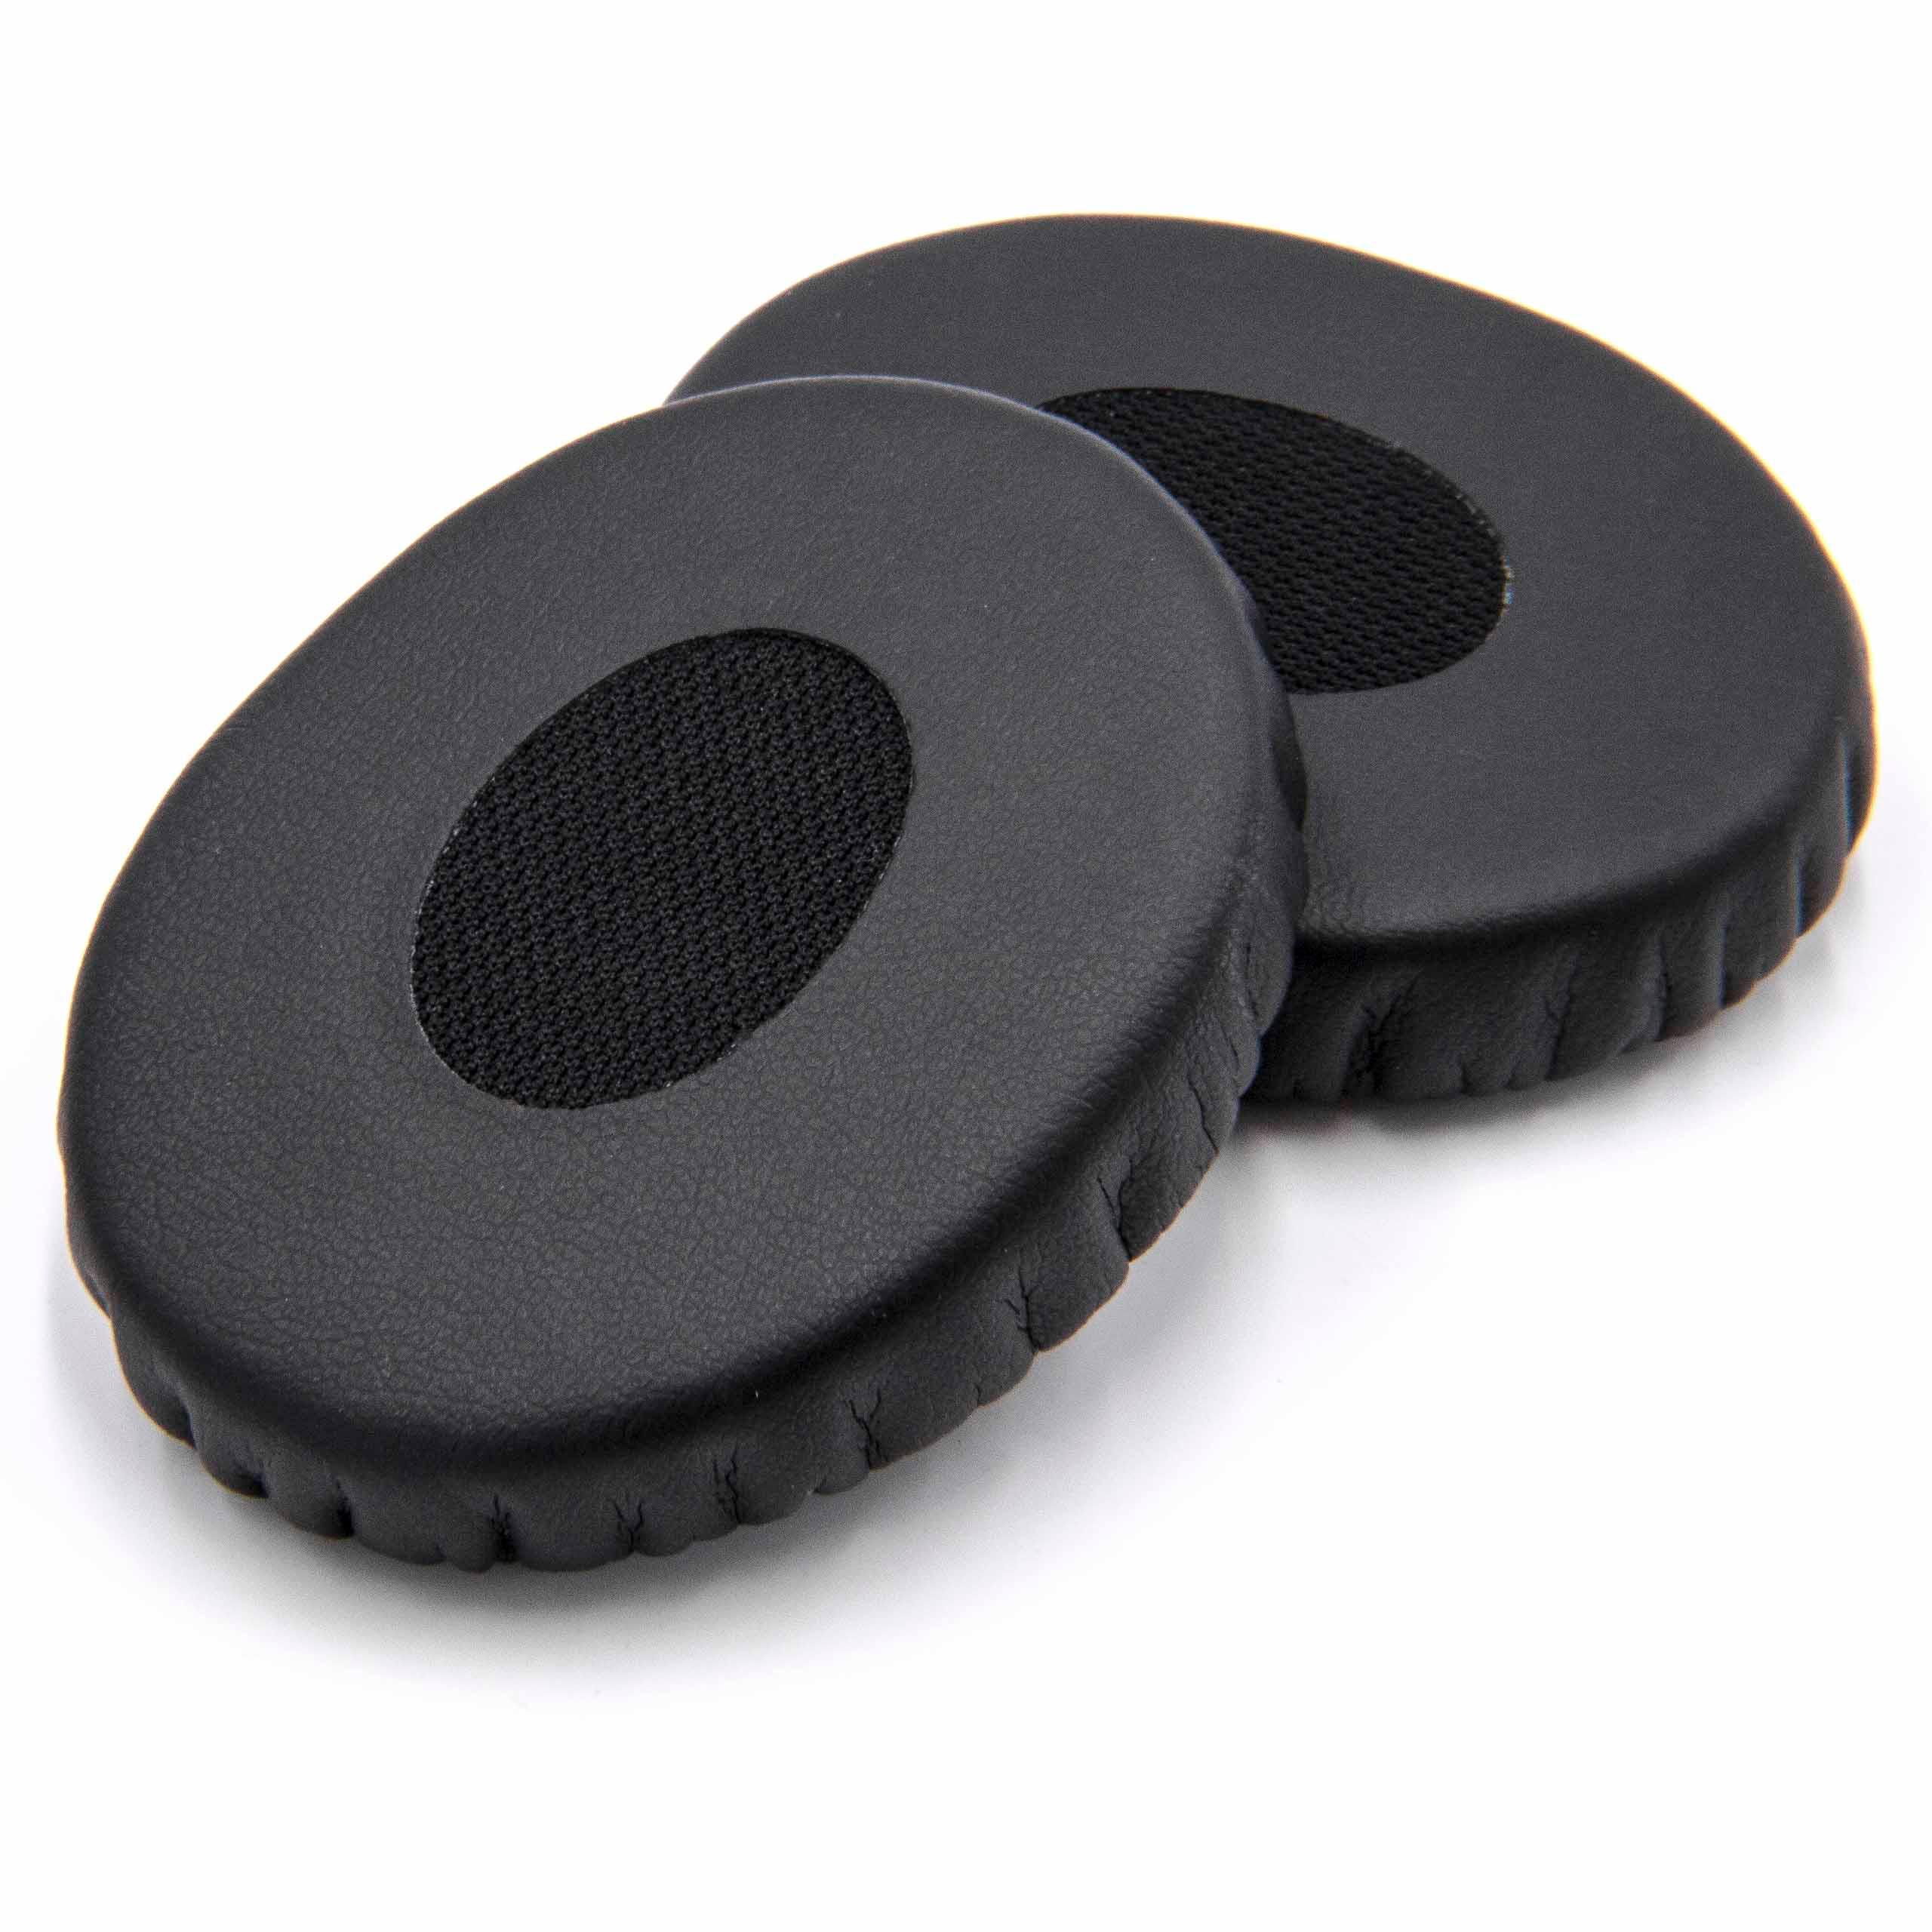 2x Ear Pads suitable for Bose OnEar Headphones etc. - synthetic fibre, 5.6 cm External Diameter